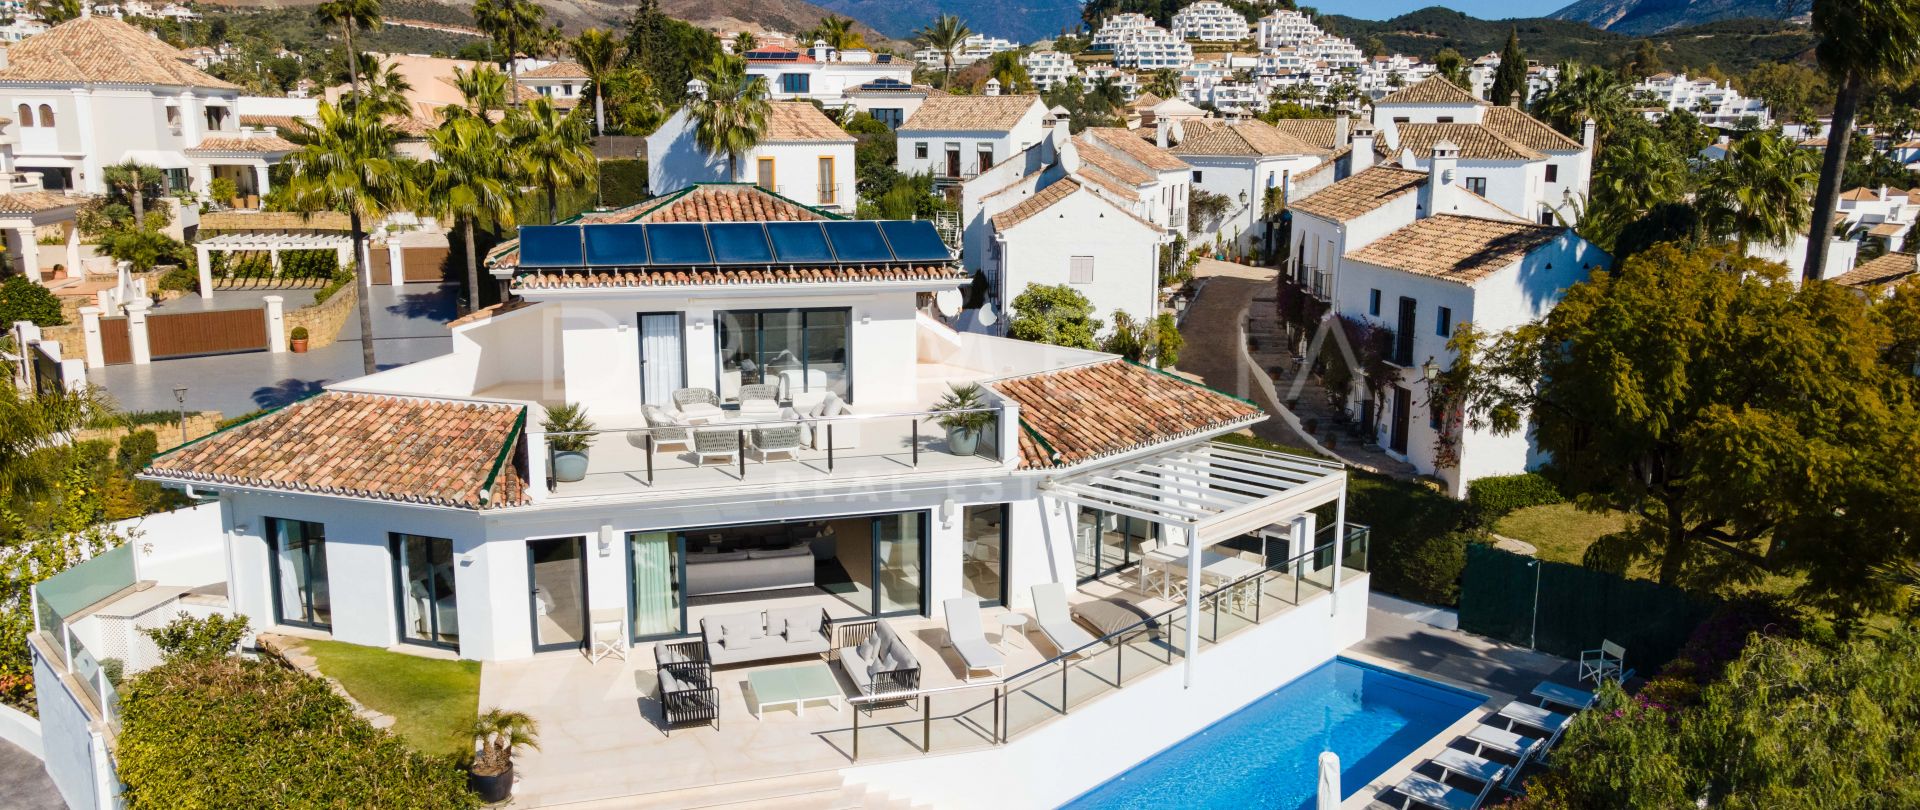 Élégante villa méditerranéenne moderne rénovée dans la magnifique Nueva Andalucia, Marbella